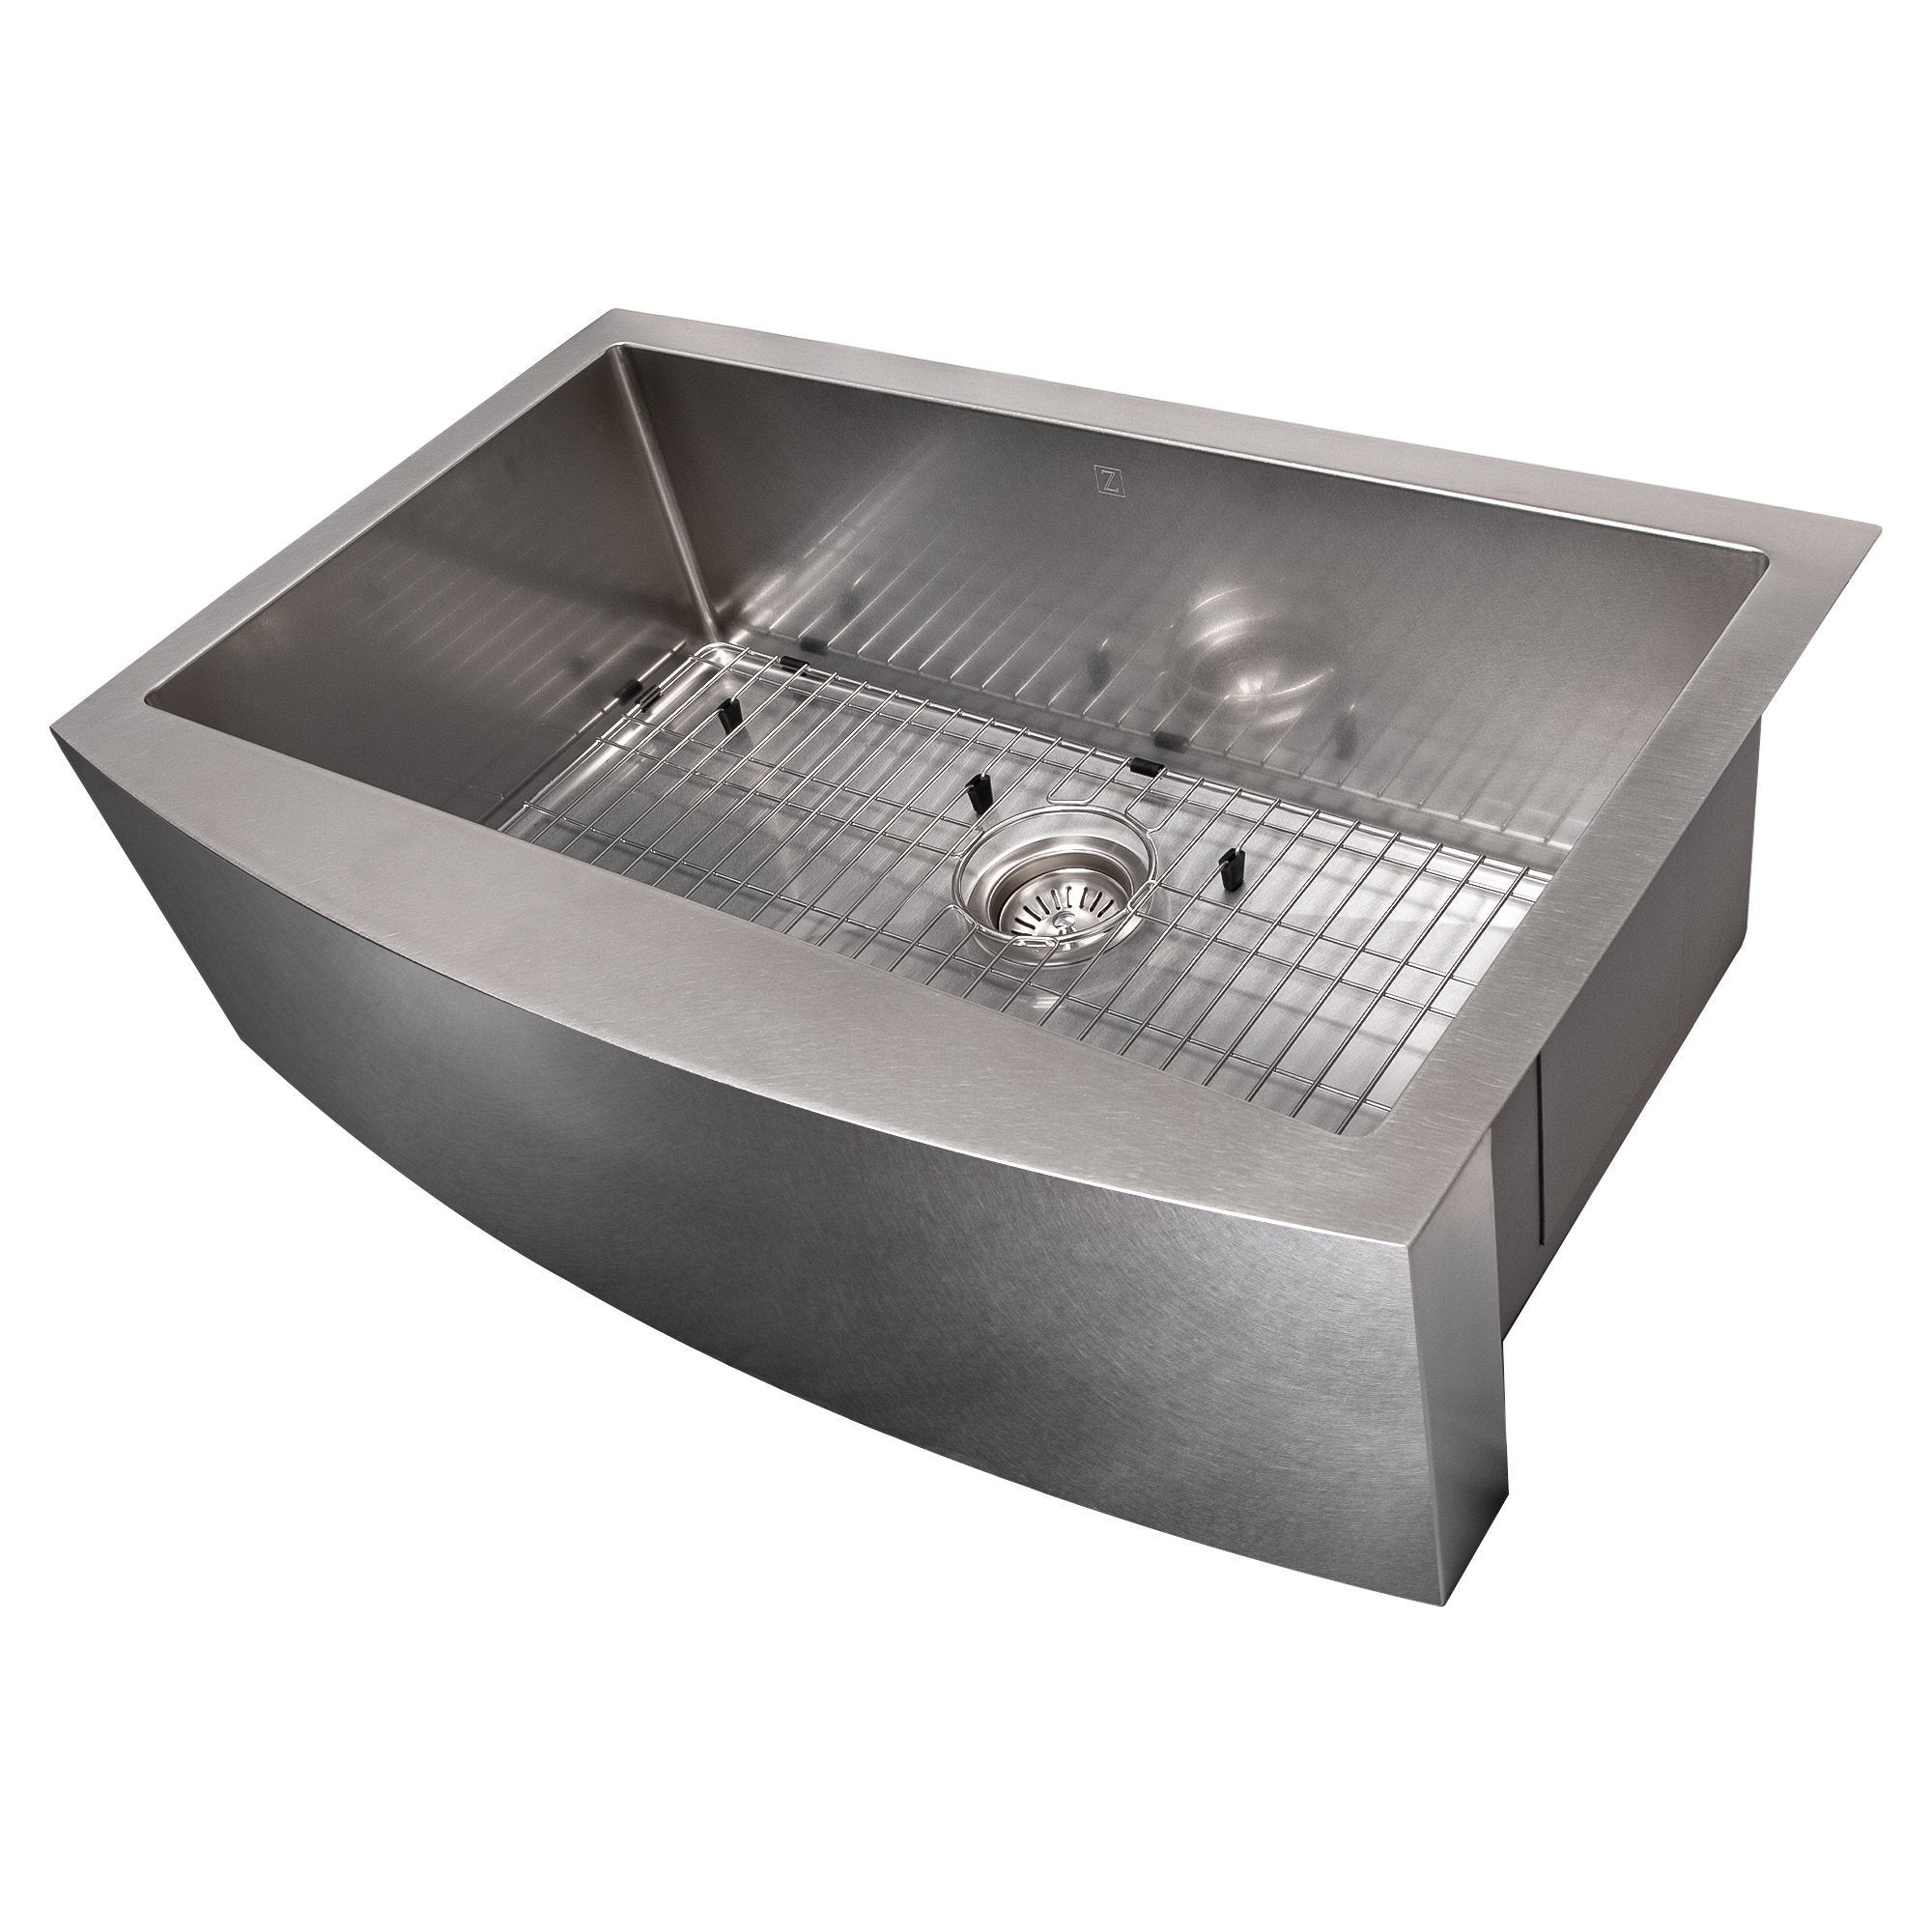 ZLINE 33 in. Vail Farmhouse Apron Mount Single Bowl Kitchen Sink with Bottom Grid (SAS-33) DuraSnow® Stainless Steel